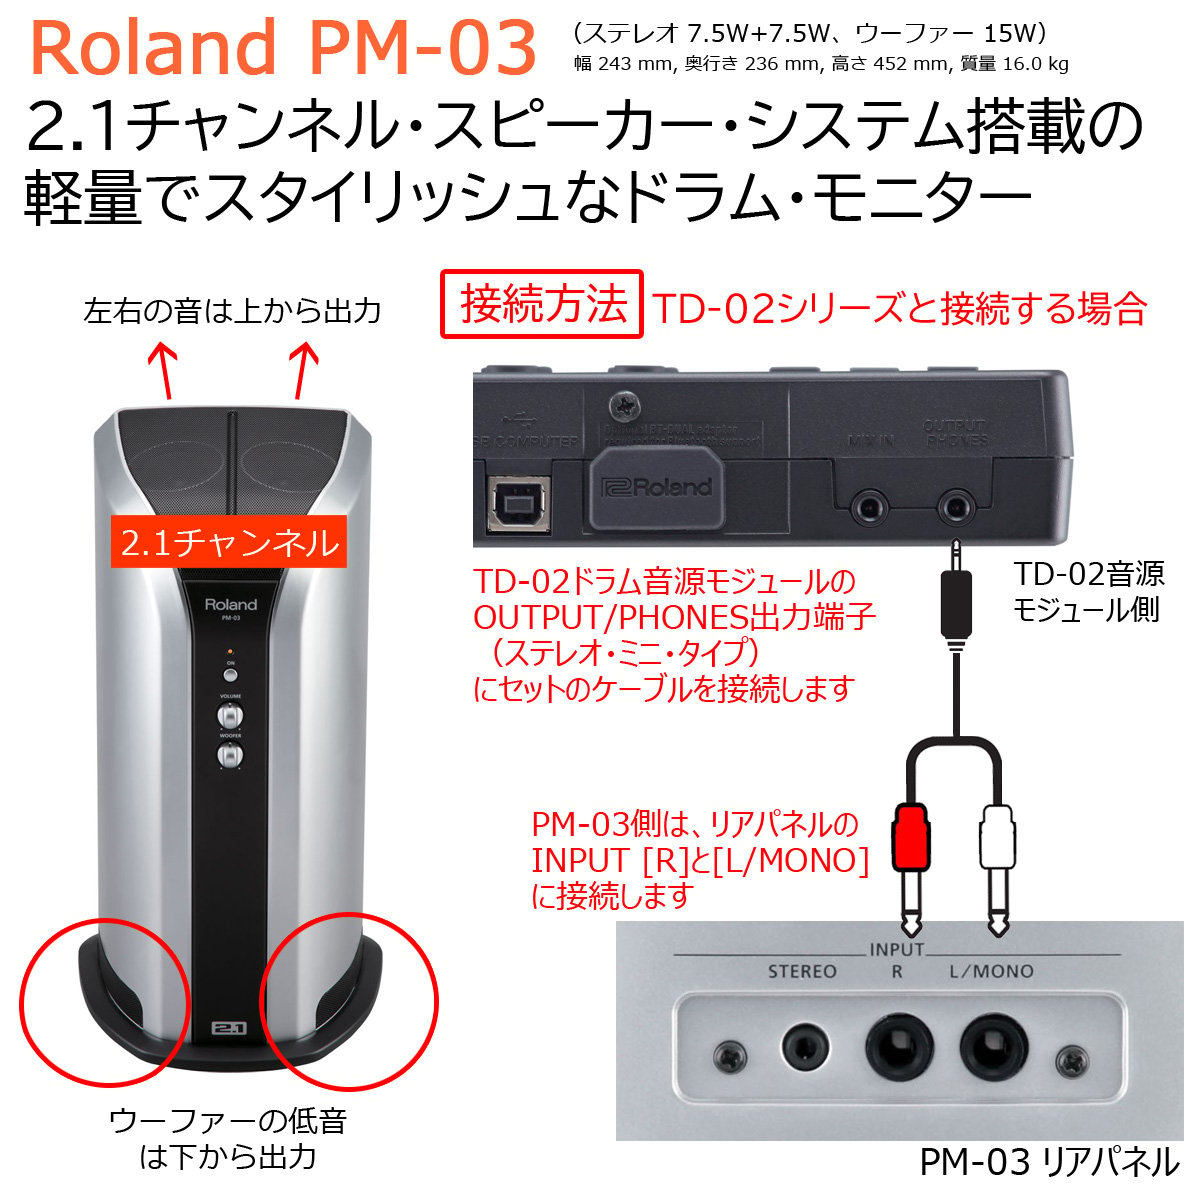 Roland / PM-03 электронная ударная установка для personal монитор подключение для mi лак teY знак кабель (3m) комплект (TD-1/TD-02/TD-07 соответствует )